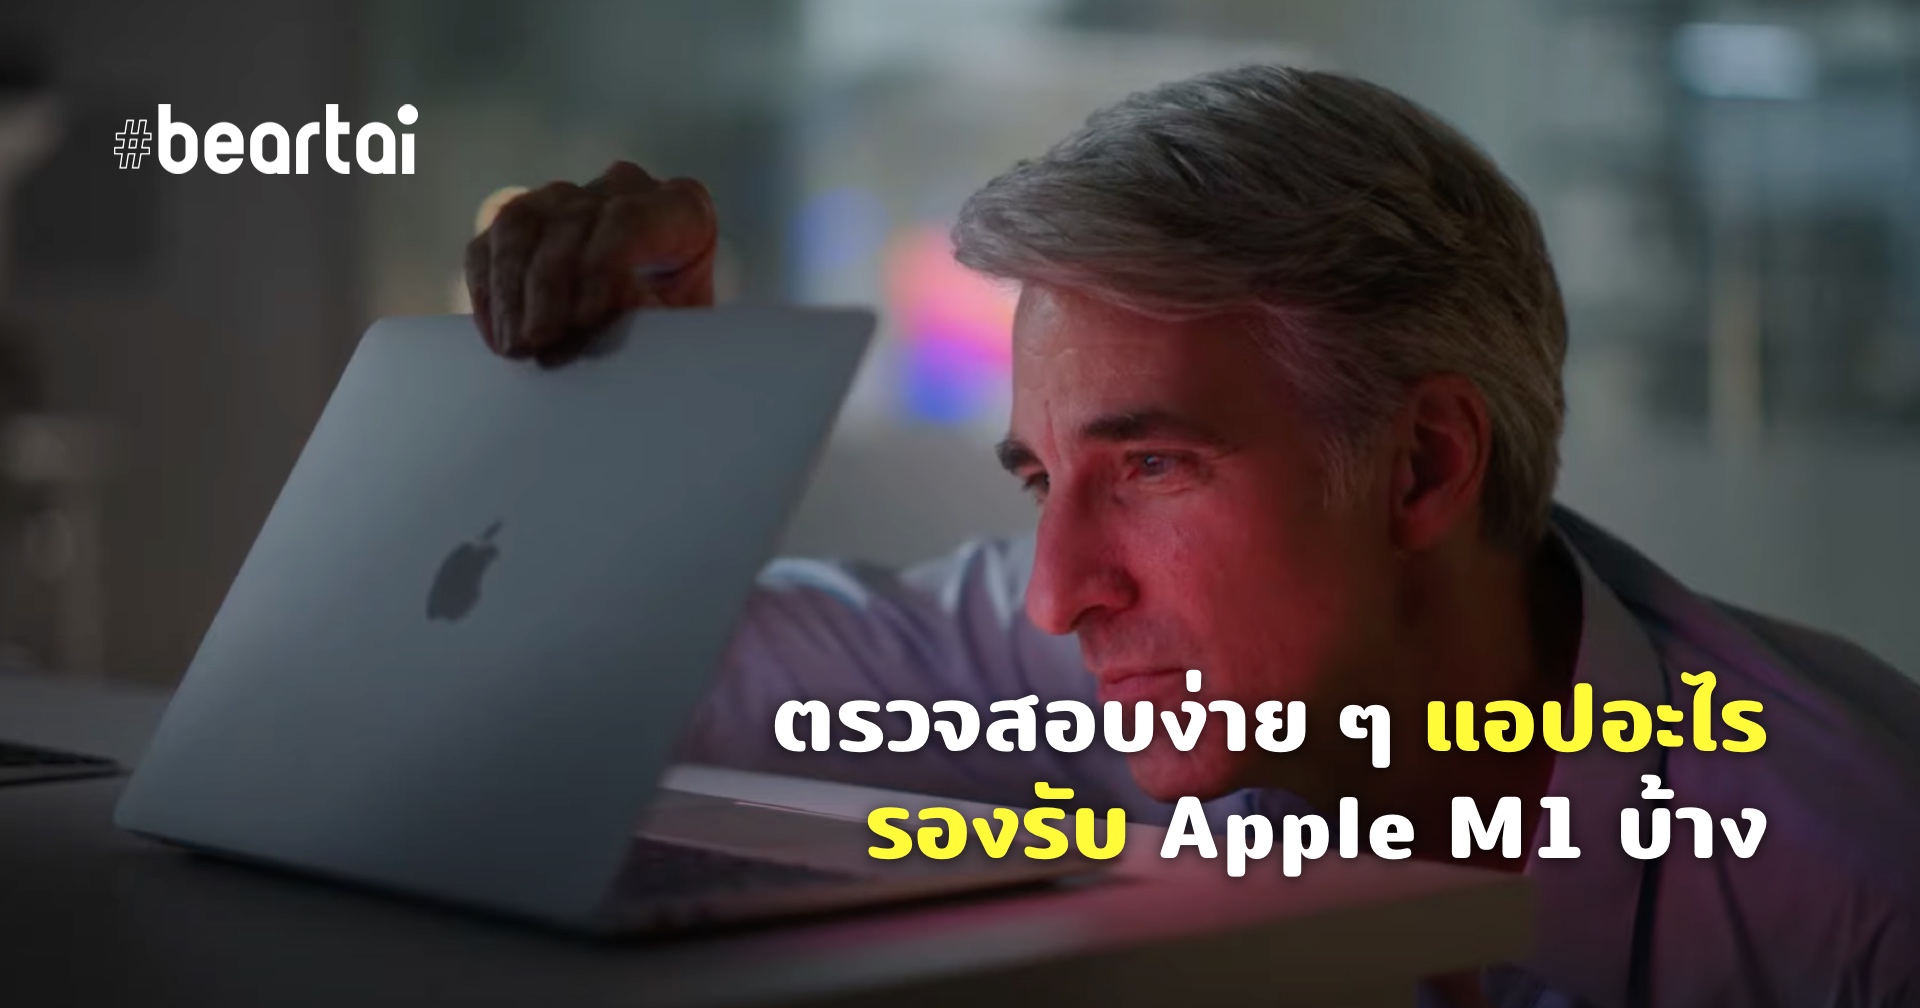 รวมรายชื่อแอปพลิเคชันที่รองรับการทำงานบน Mac Apple M1 แบบ Native ไม่ต้องผ่าน Rosetta 2